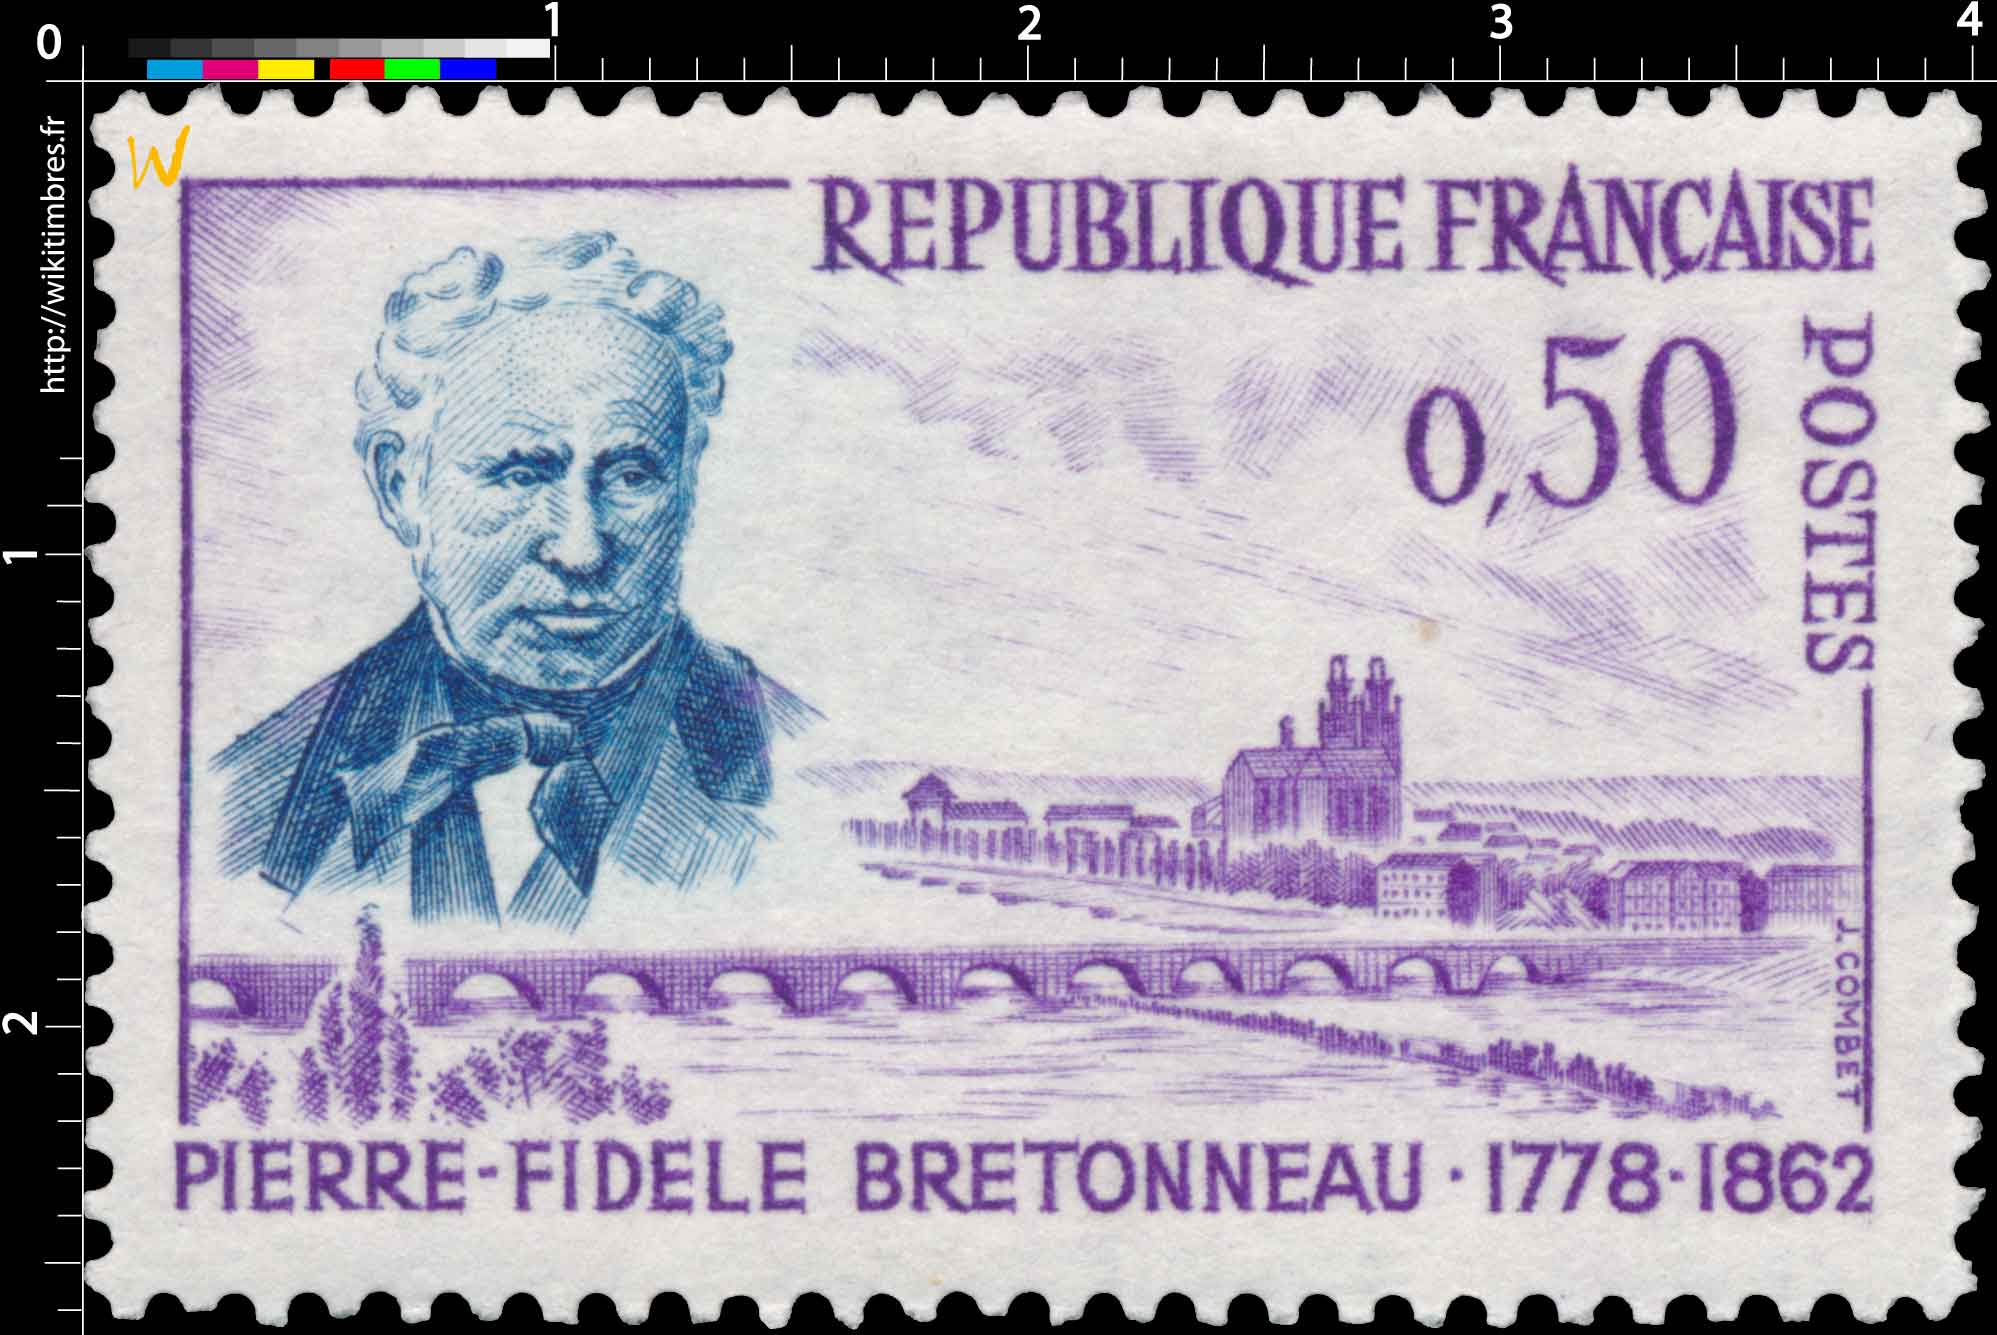 PIERRE-FIDÈLE BRETONNEAU 1778-1862